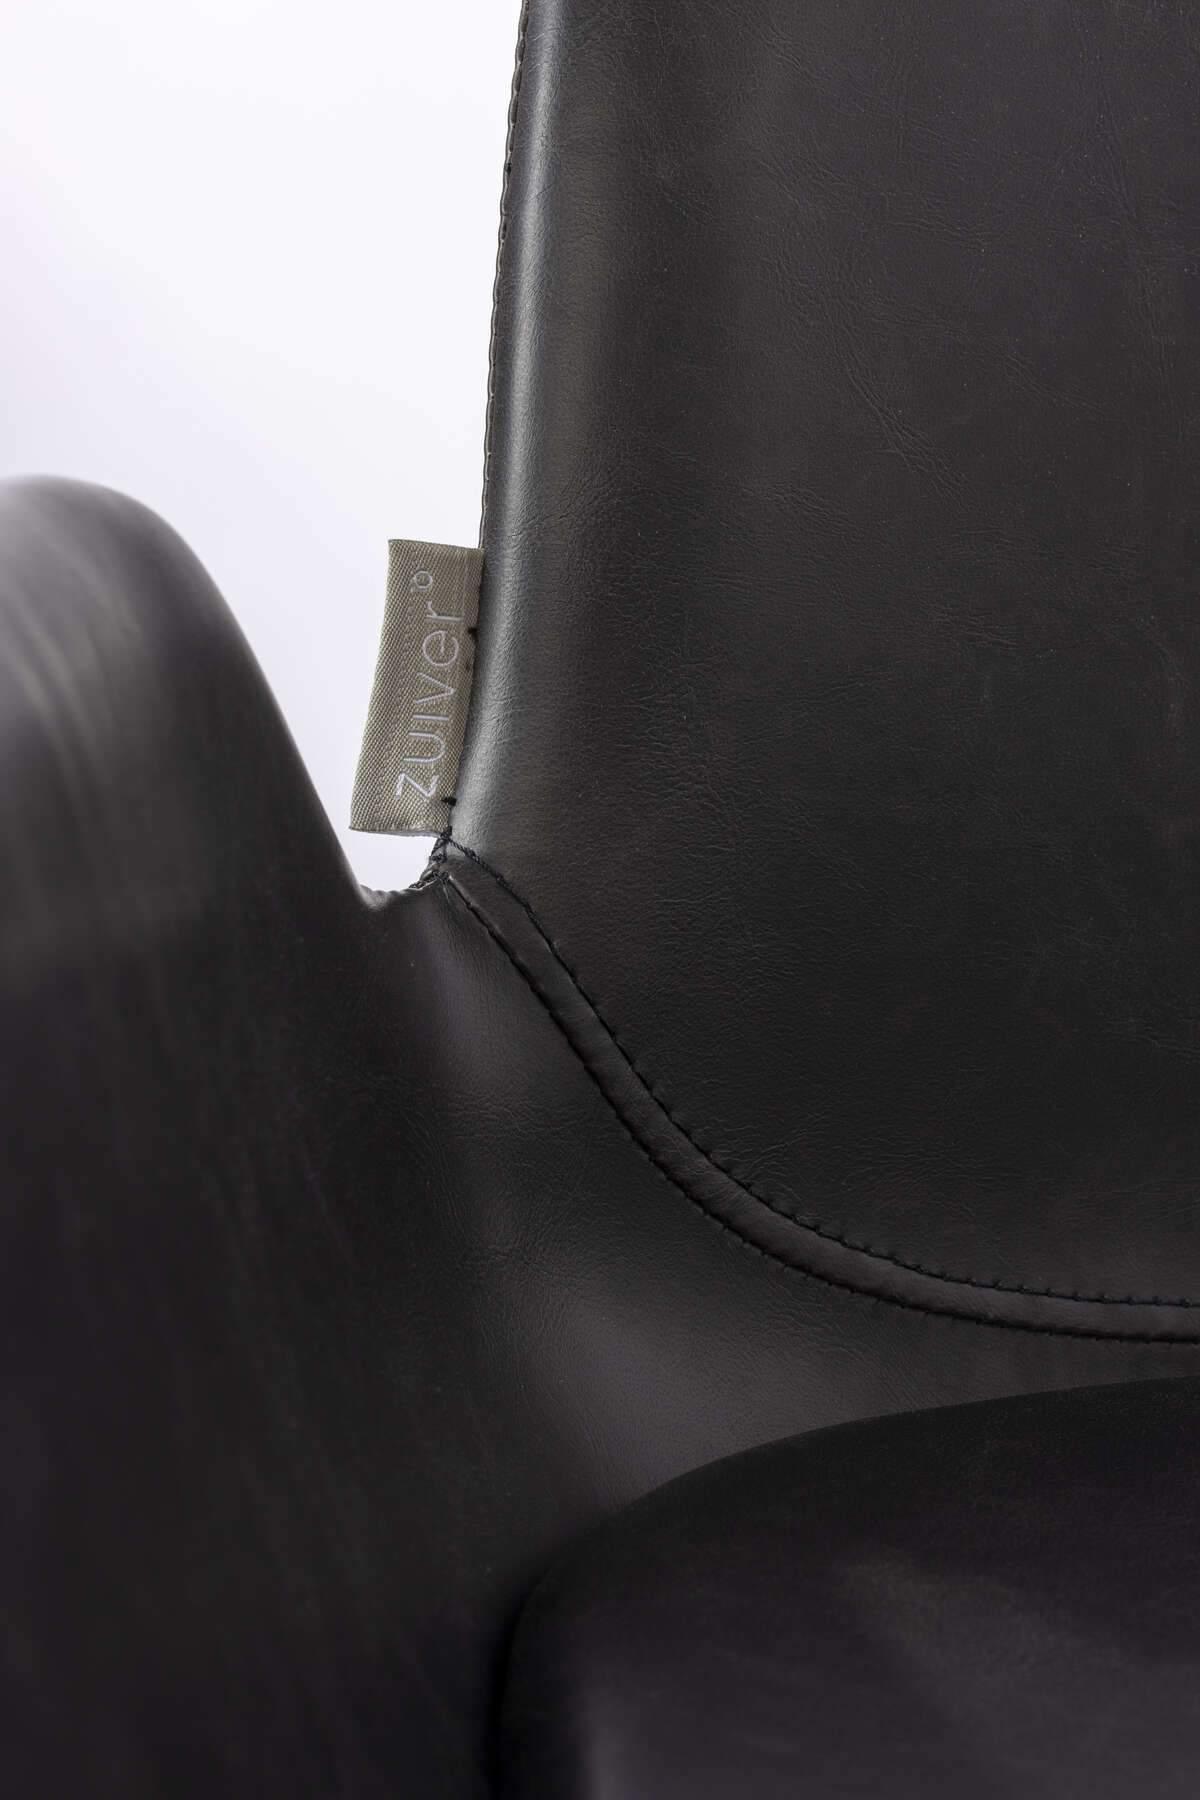 Krzesło barowe BRIT ekoskóra czarny - Eye on Design